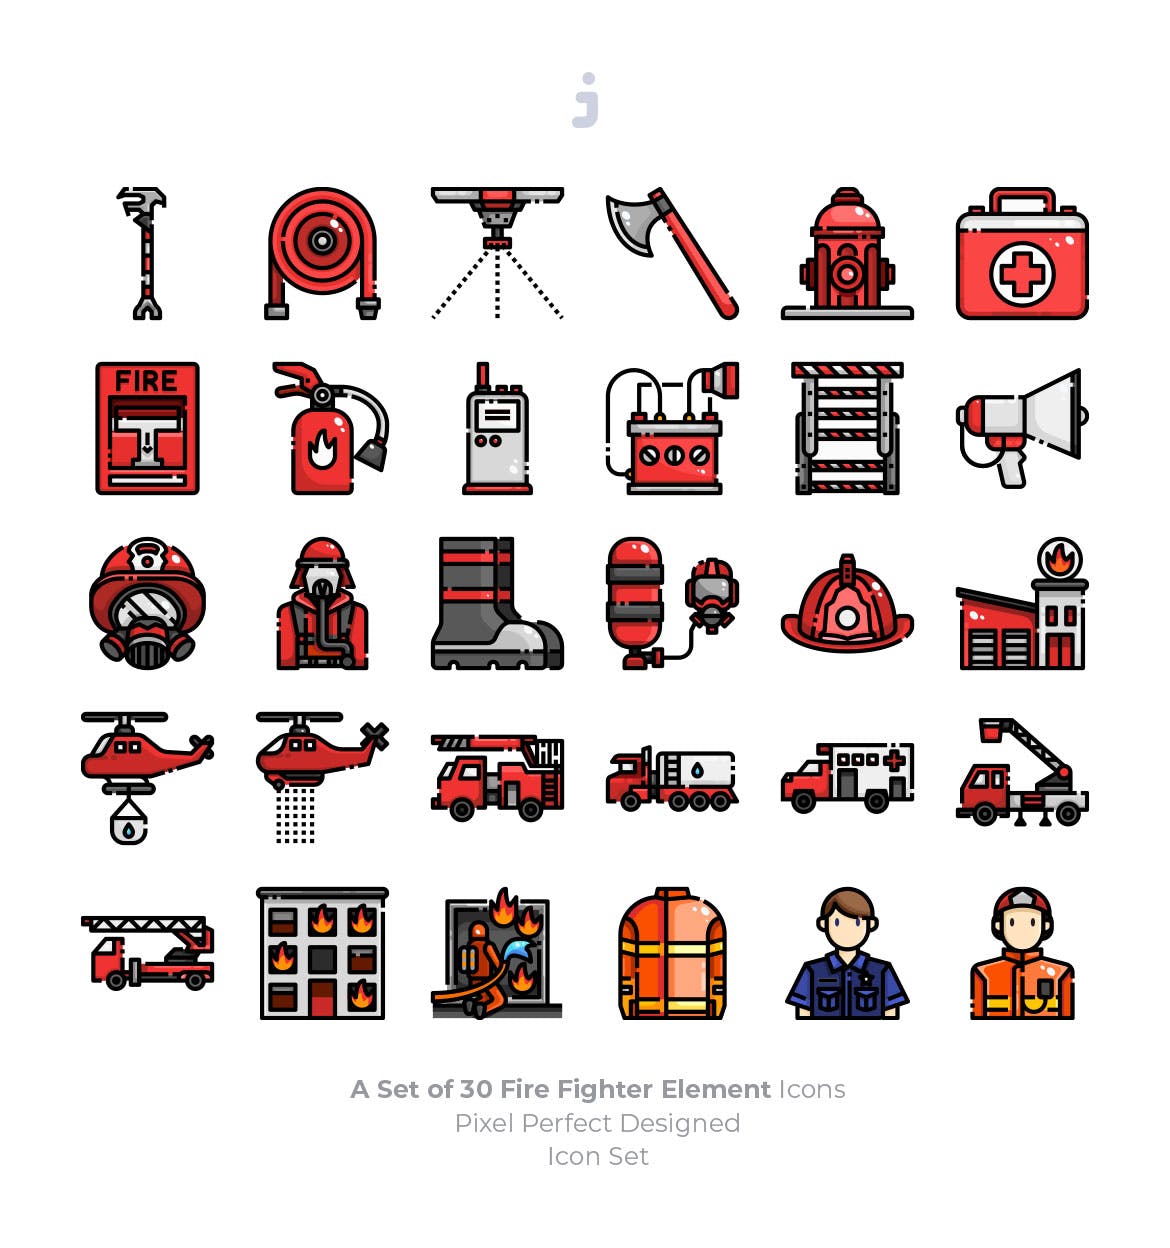 30枚消防员/消防主题矢量图标素材 30 Fire Fighter Icons插图(1)